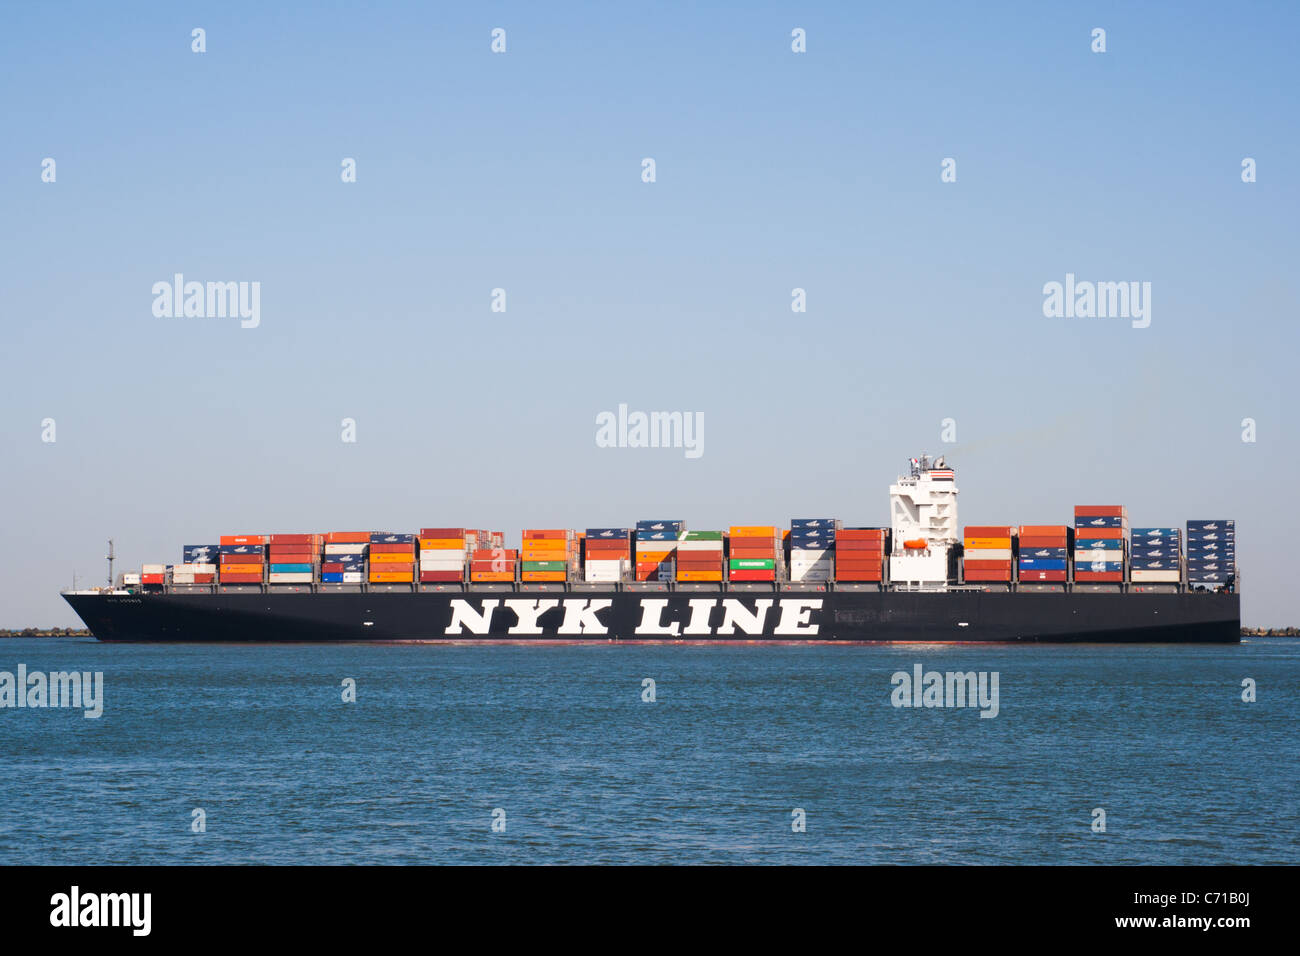 Containerschiff am Meer Stockfoto